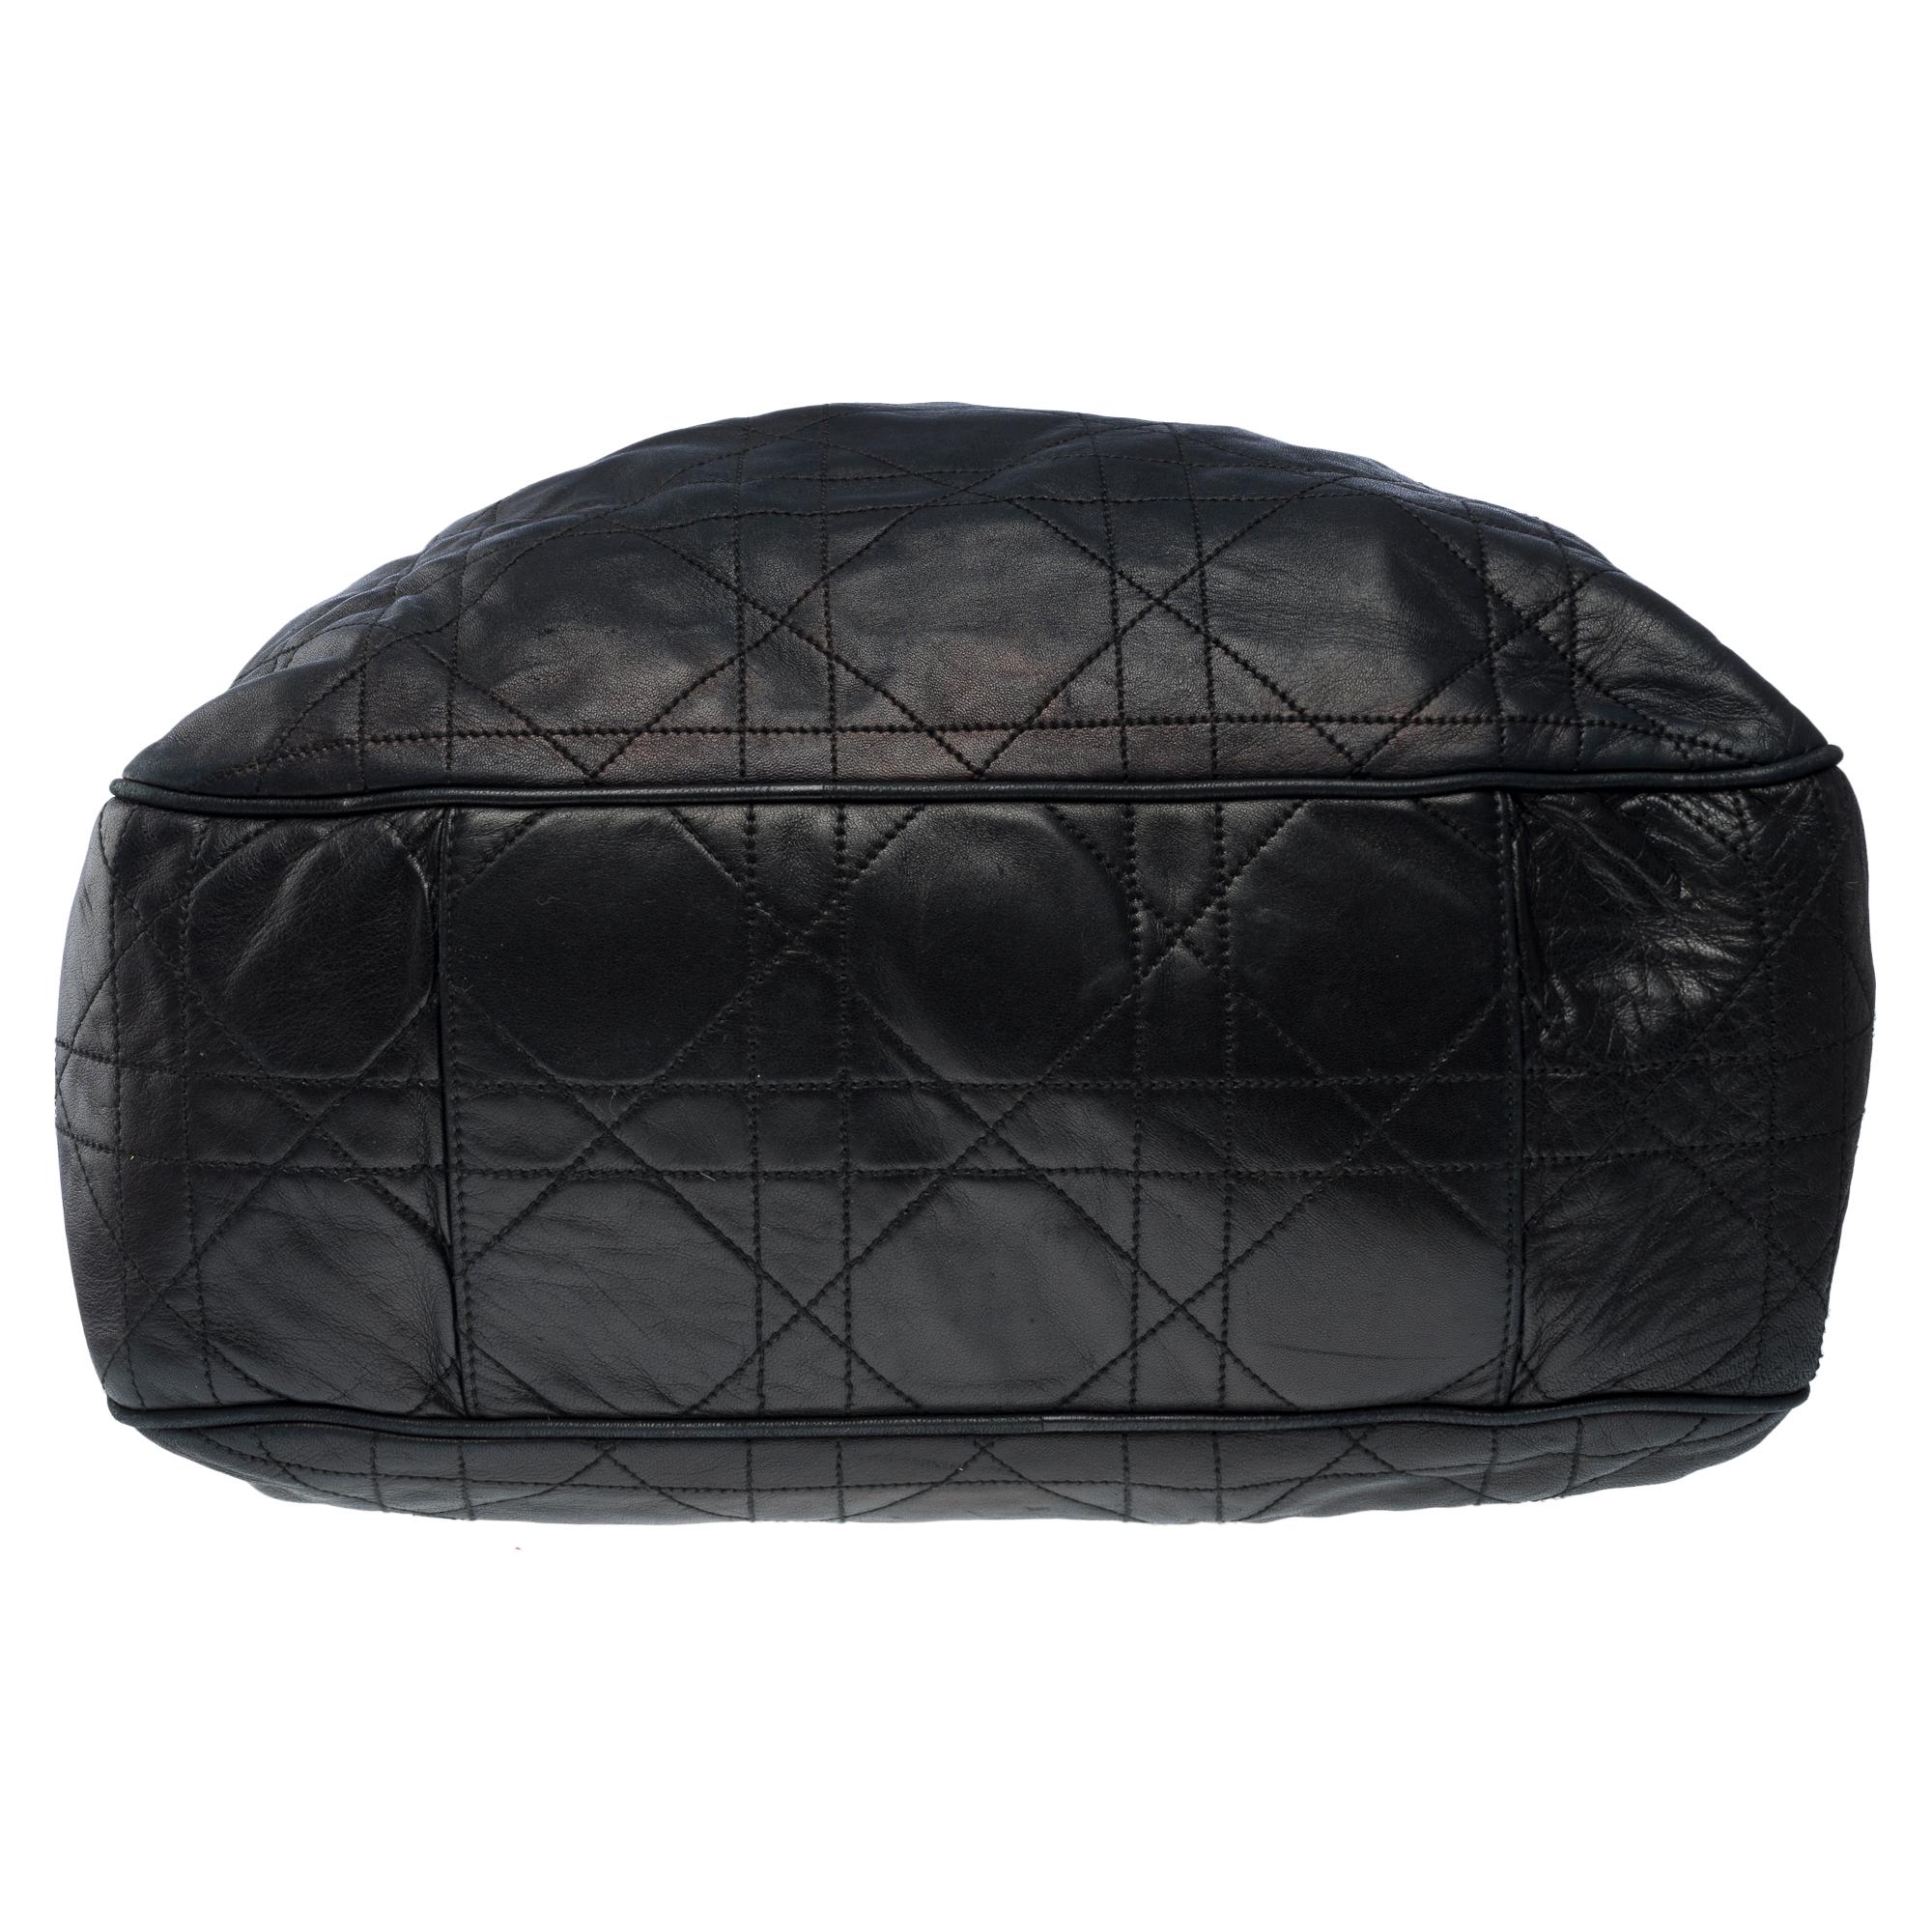 Lovely Christian Dior Shoulder bag in black lambskin cane leather, GHW 6